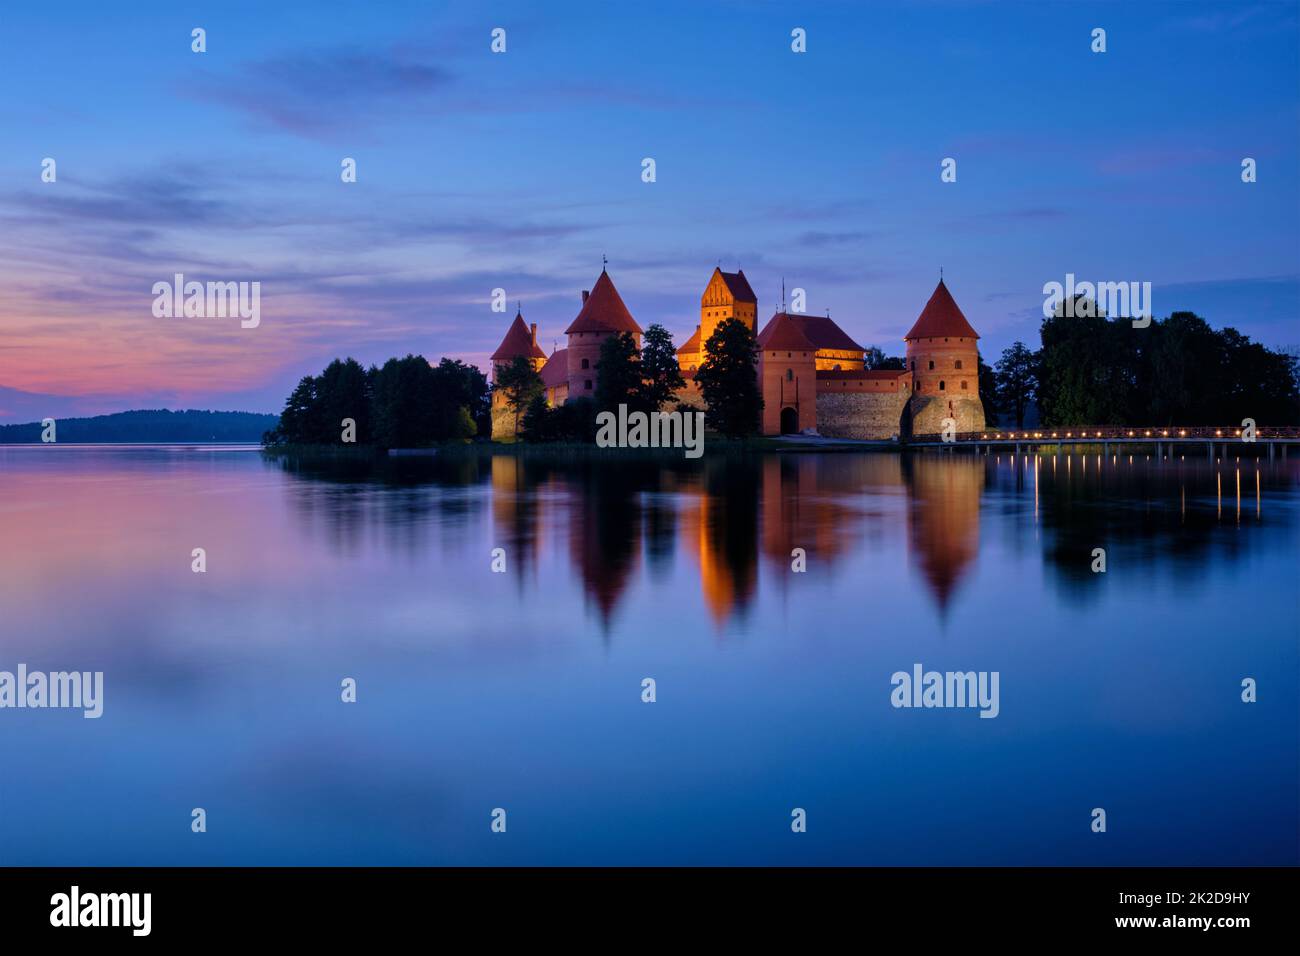 Trakai Island Castle in lake Galve, Lithuania Stock Photo